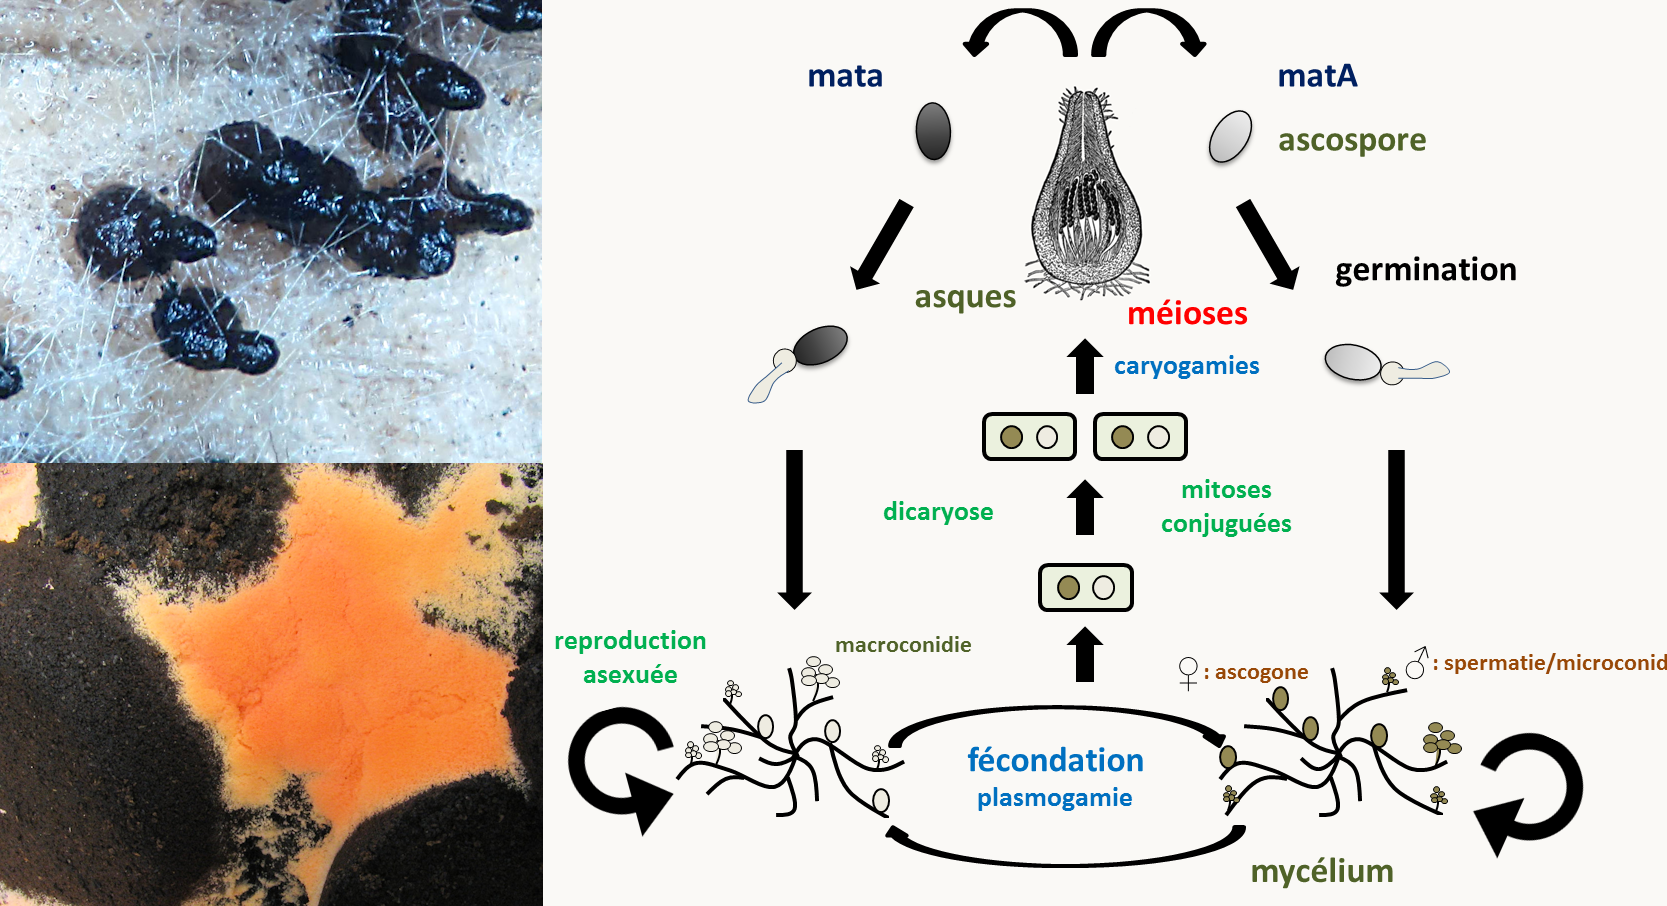 Neurospora crassa possède deux types sexuels appelés mata et matA. Le mycélium du champignon est haploïde et différencie des organes mâles ou spermaties et femelles ou ascogones. La fécondation se produit entre un organe mâle d'un type sexuel et un organe femelle du type sexuel opposé. La fécondation est suivie d'une étape dicaryotique qui permet de multiplier le nombre de cellules issues de la fécondation et dans lesquelles auront lieu les caryogamies qui sont immédiatement suivies des méioses et d'une mitose post-méiotique supplémentaire donnant naissance à des asques contenant 8 ascospores ordonnées. Toutes ces étapes de développement sexuel se produisent dans une fructification appelée périthèce (en haut à gauche). Le champignon est aussi capable de différencier des spores de dispersion asexuelle. Il en existe de deux types: certaines sont uninucléées, les microconidies, qui peuvent aussi servir de gamètes mâles, les autres sont plurinucléées et sont appelées les macroconides. Elles accumulent des carotènes orangés (en bas à gauche).